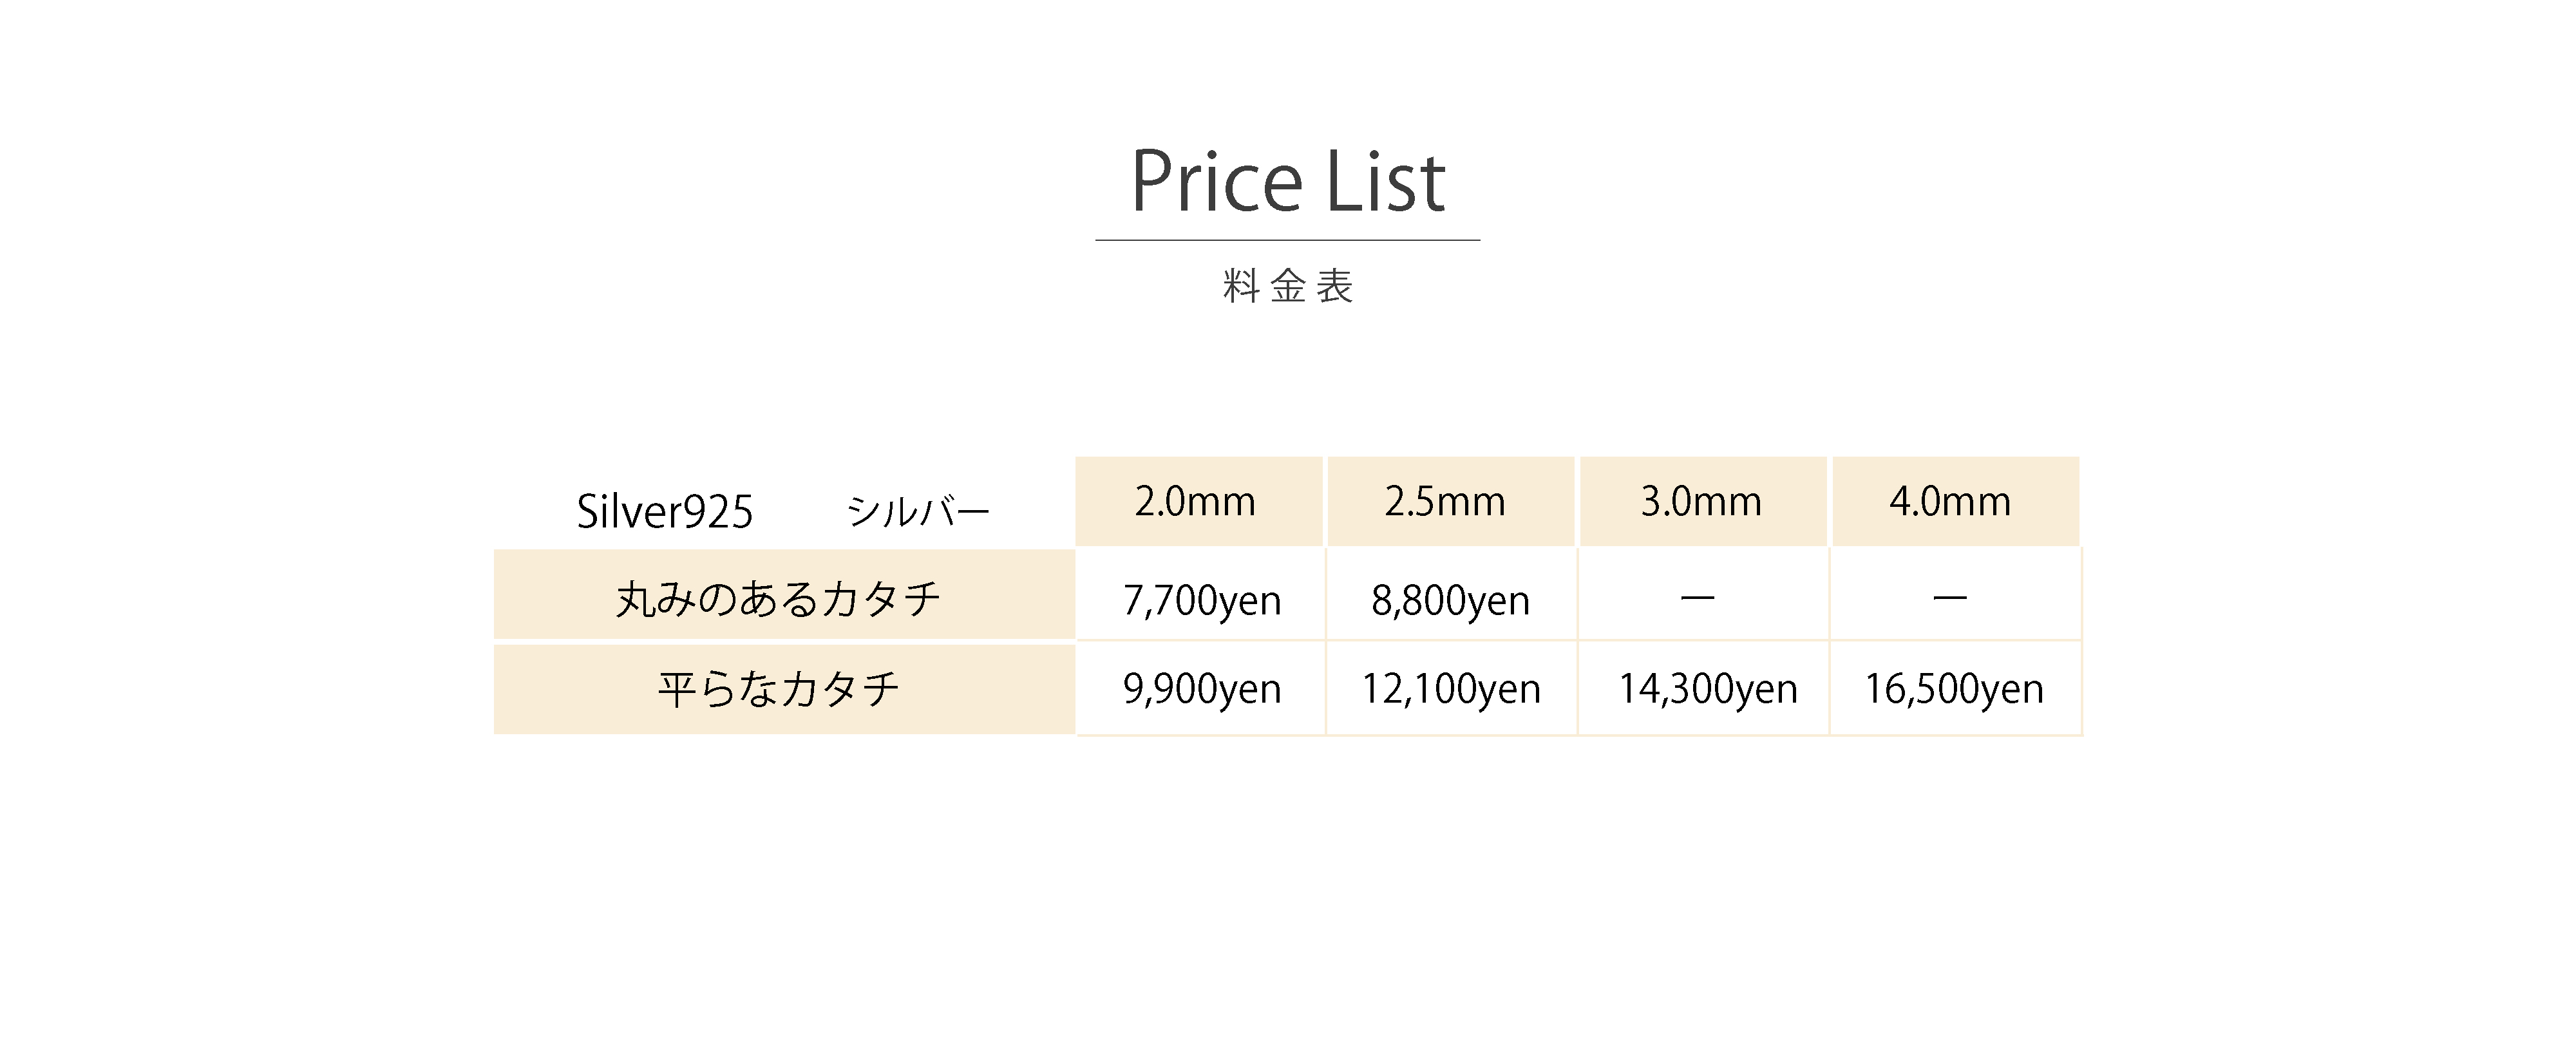 うつくしみ宇和島店バングル作り体験の価格表です